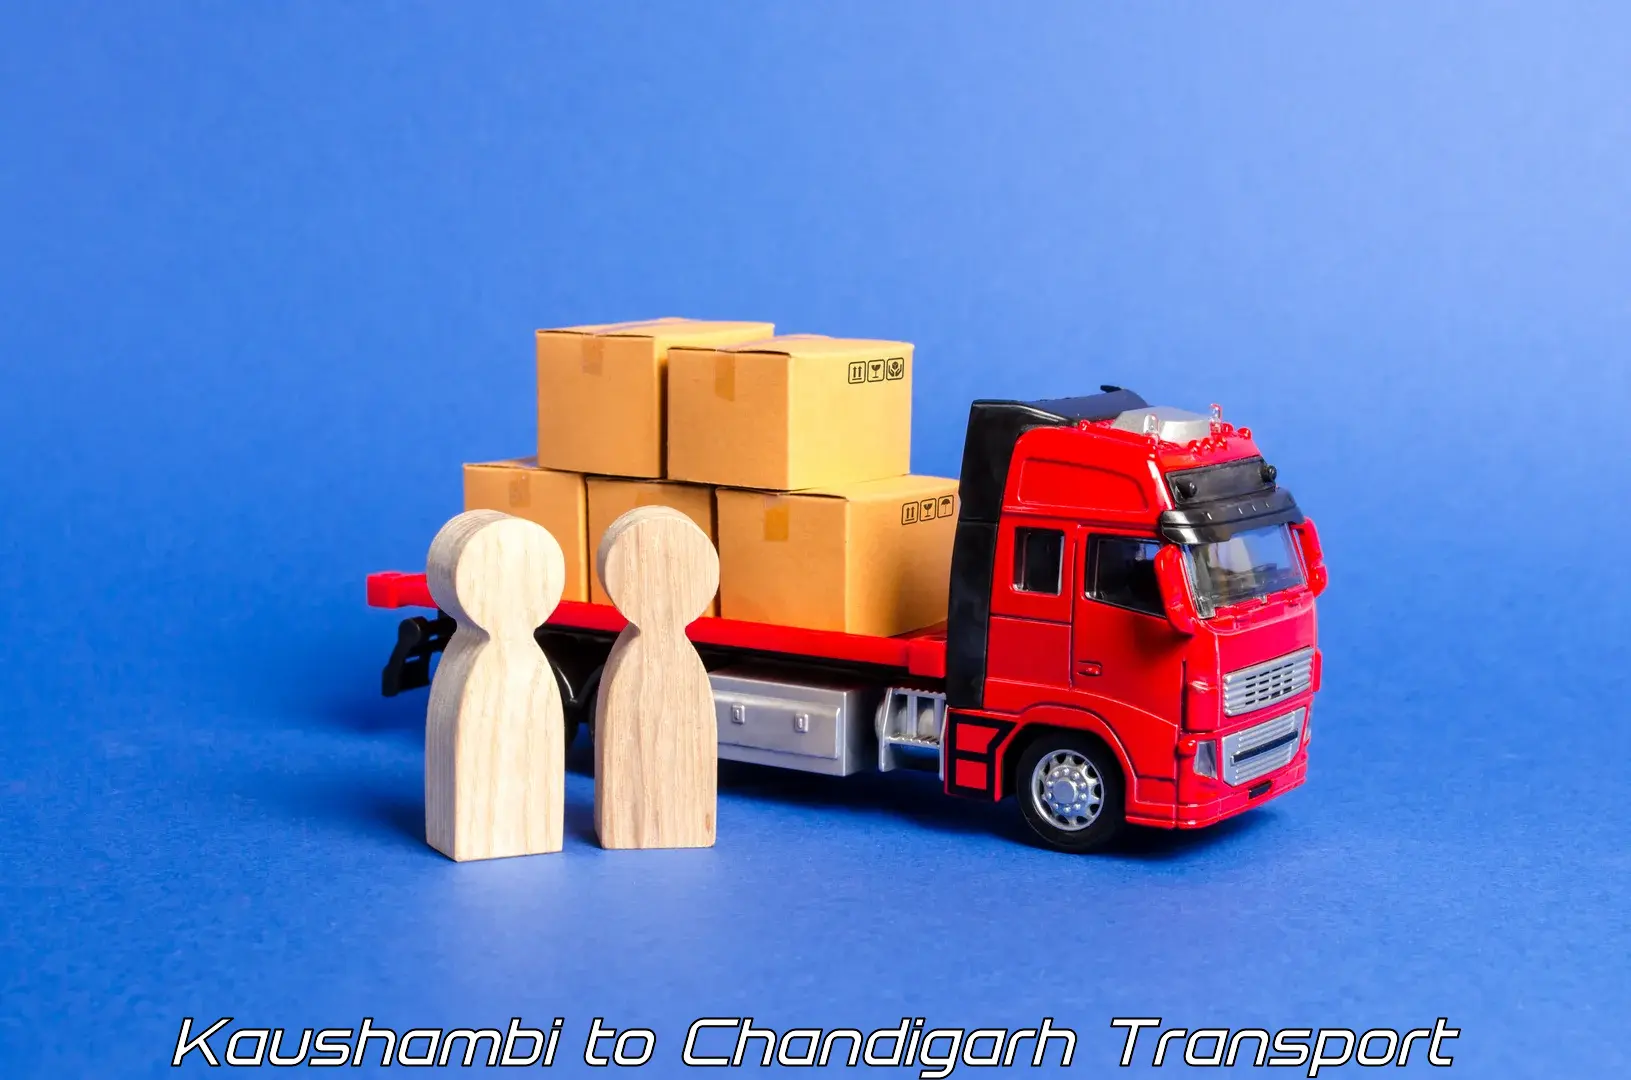 Transport in sharing in Kaushambi to Chandigarh